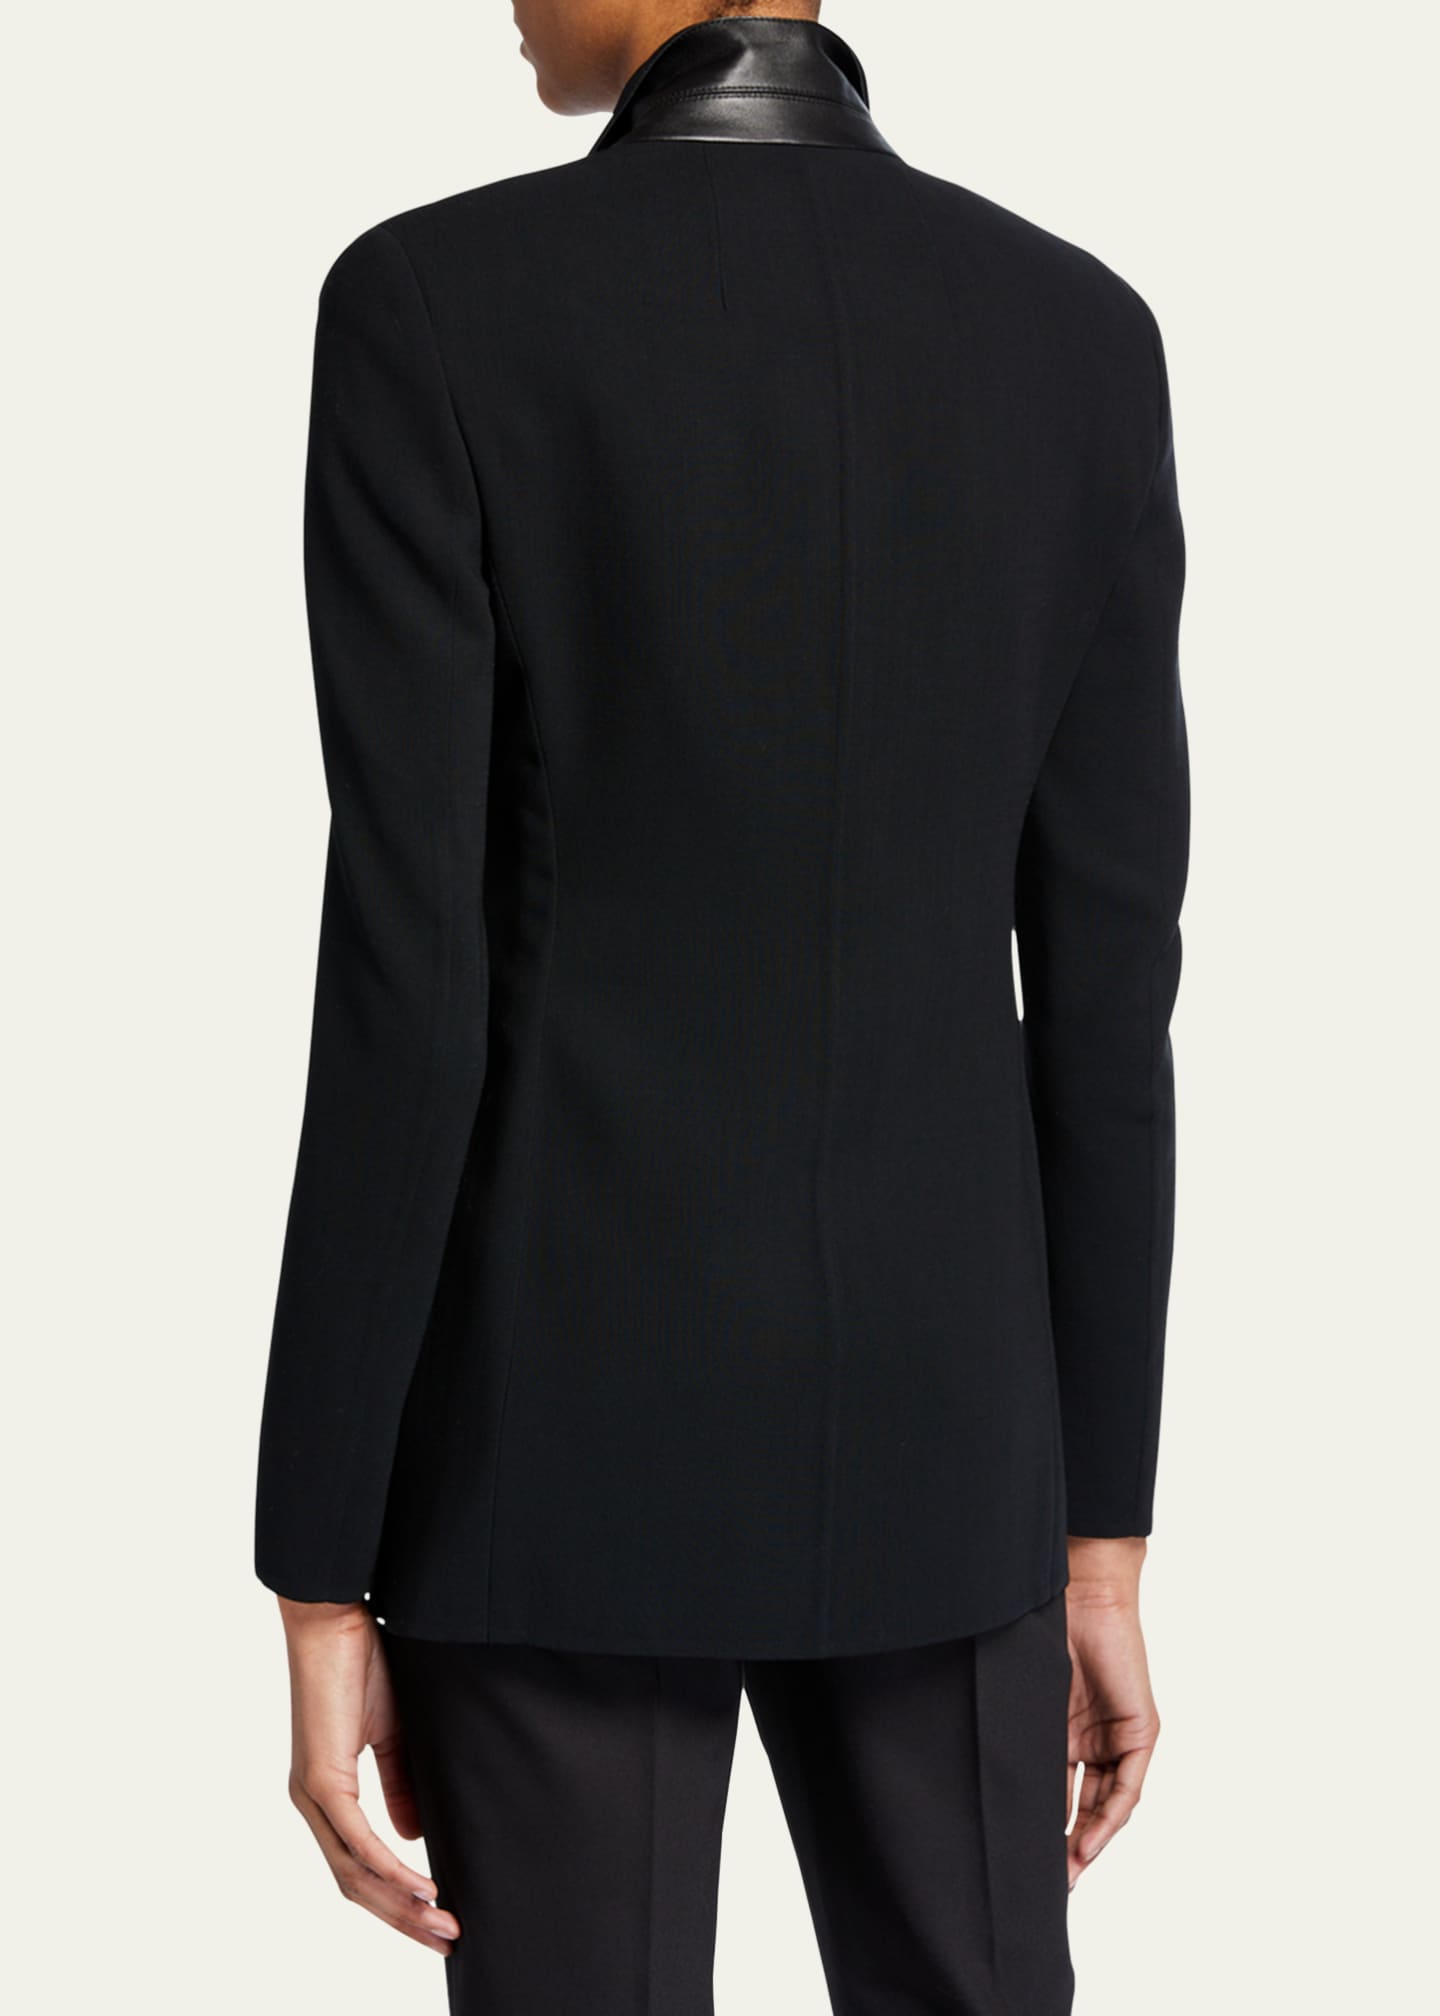 Akris Odette Long Wool Blazer Jacket - Bergdorf Goodman